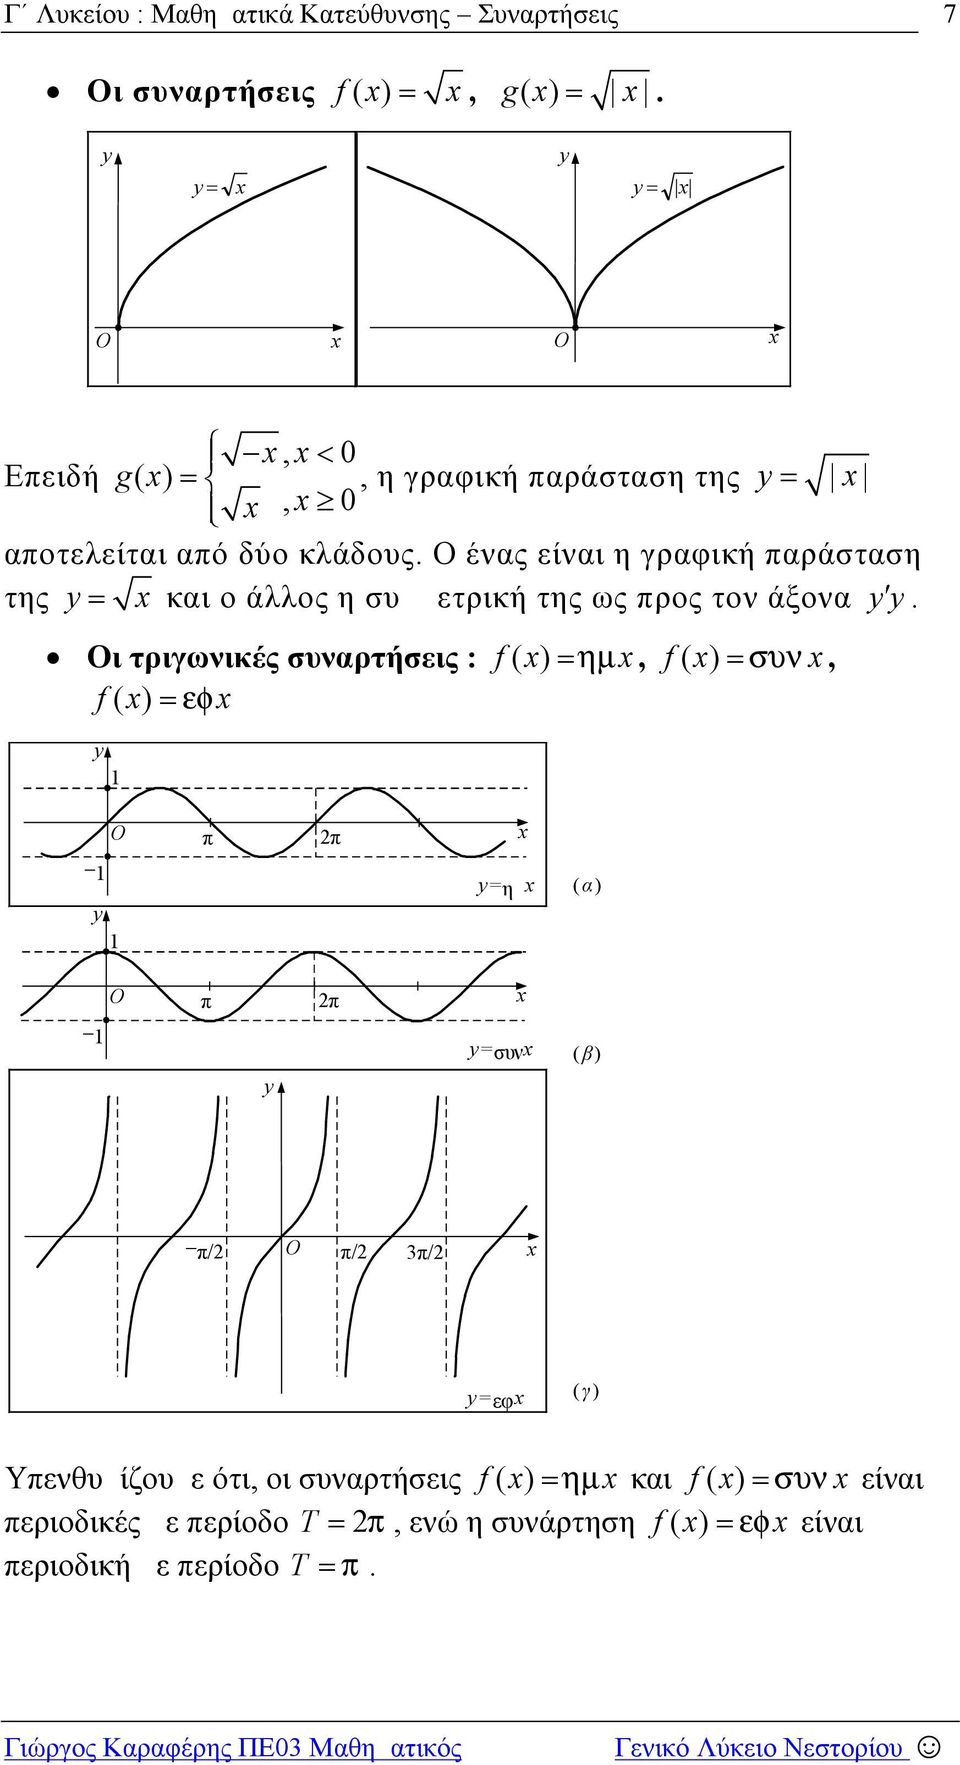 τριγωνικές συναρτήσεις : () (), (), π π =ημ (α) π π =συν (β) π/ π/ π/ =εφ (γ) Υπενθυμίζουμε